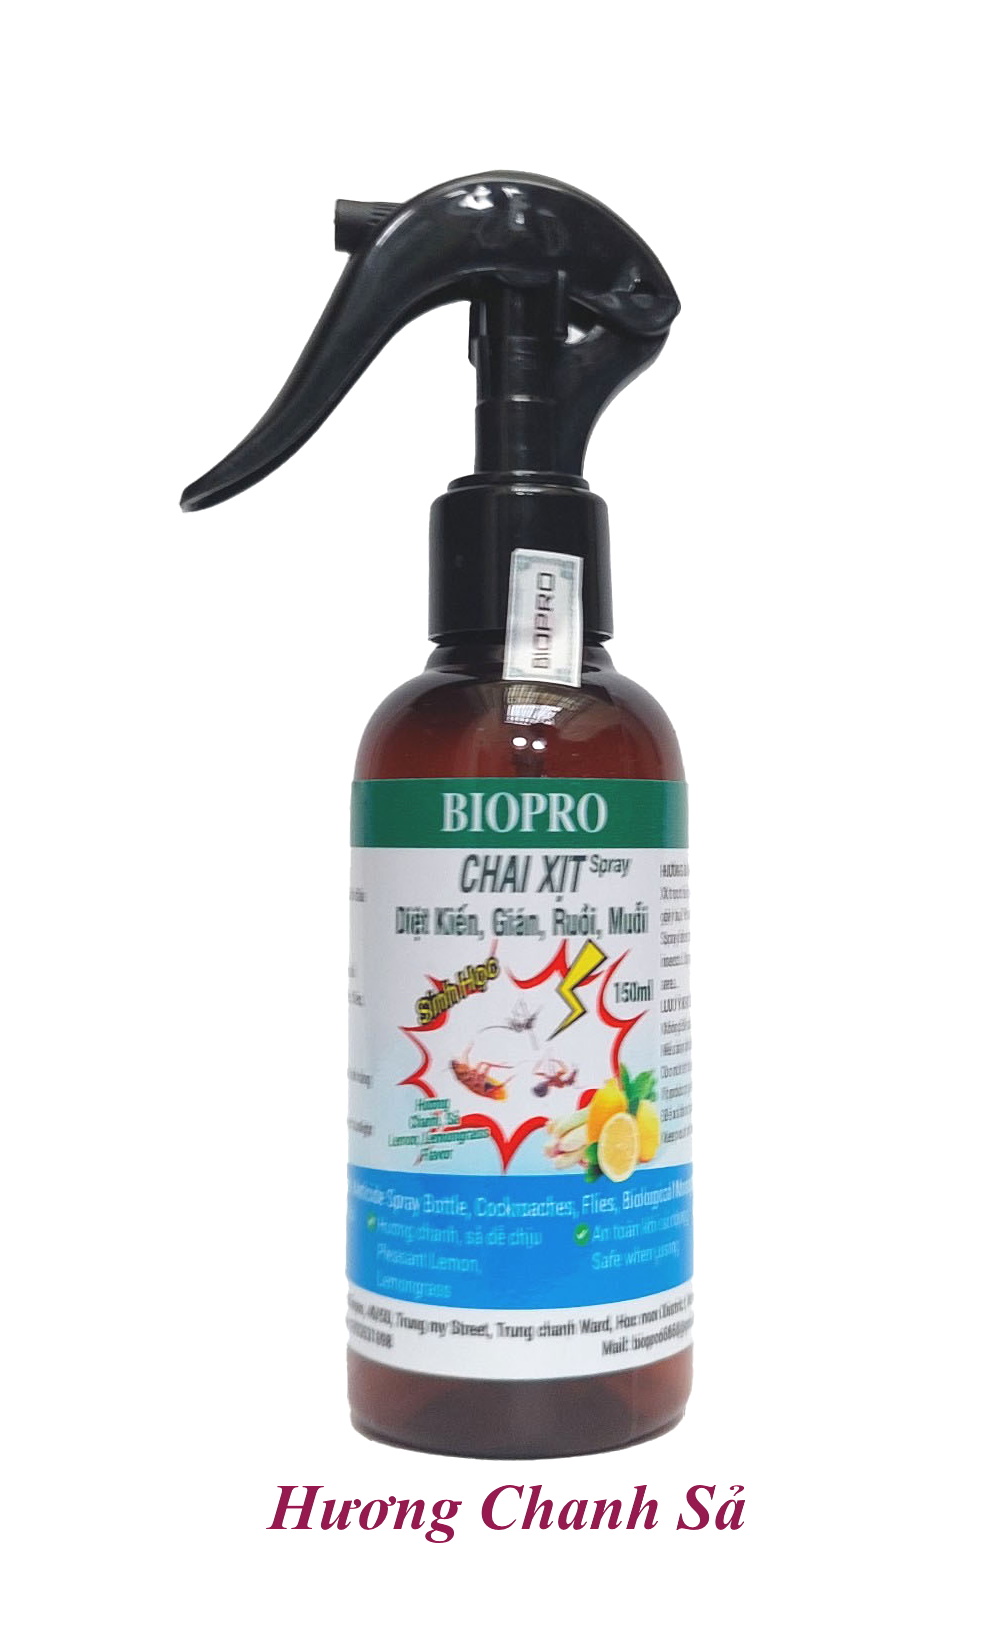 Chai dạng xịt 150ml. Thuốc Diệt kiến Diệt gián Diệt ruồi Diệt muỗi Sinh học Biopro an toàn hiệu quả Nhiều hương lựa chọn